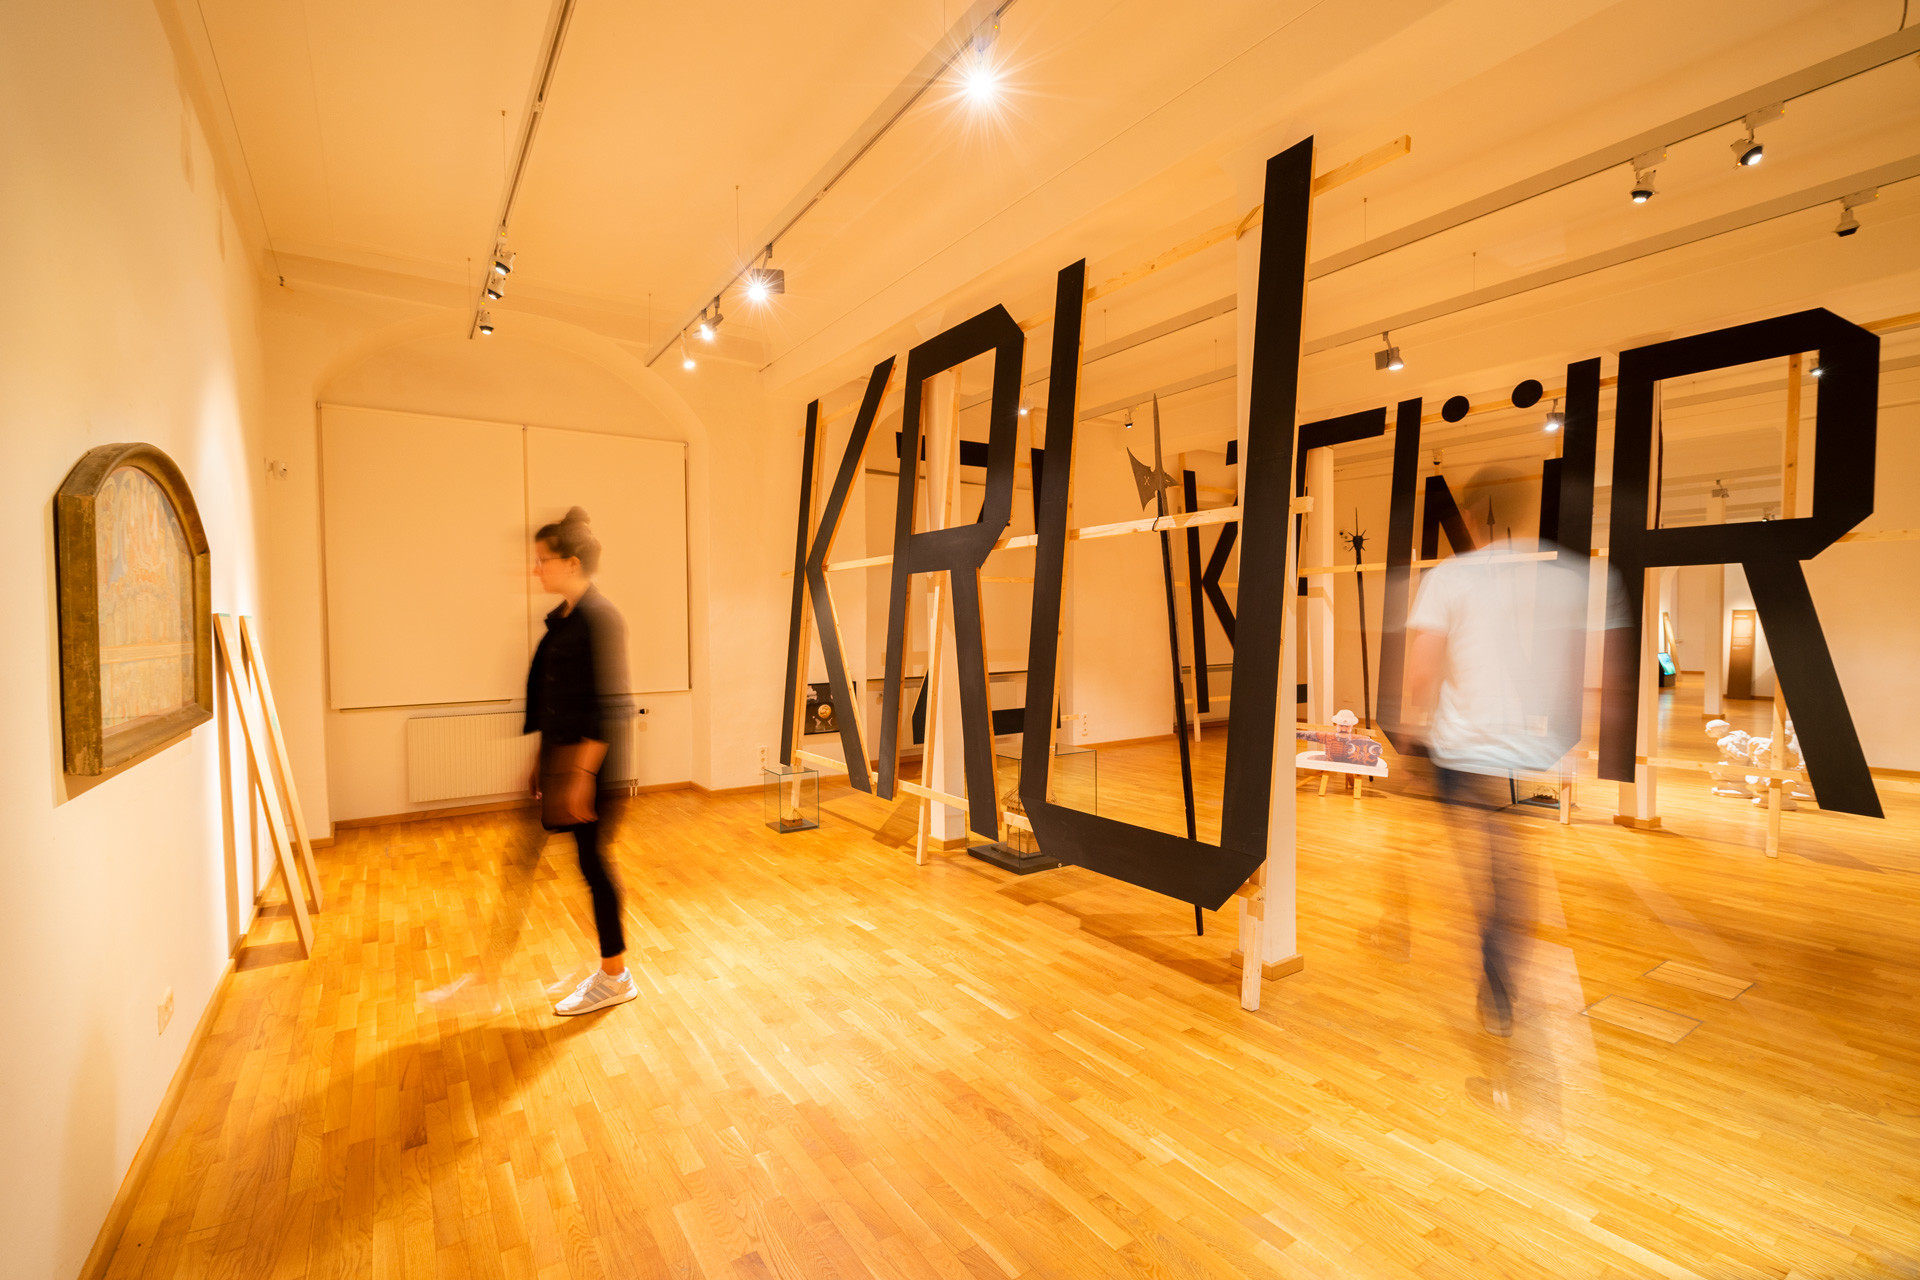 Ausstellungsraum mit einer raumgreifenden typografischen Installation durch die Menschen gehen